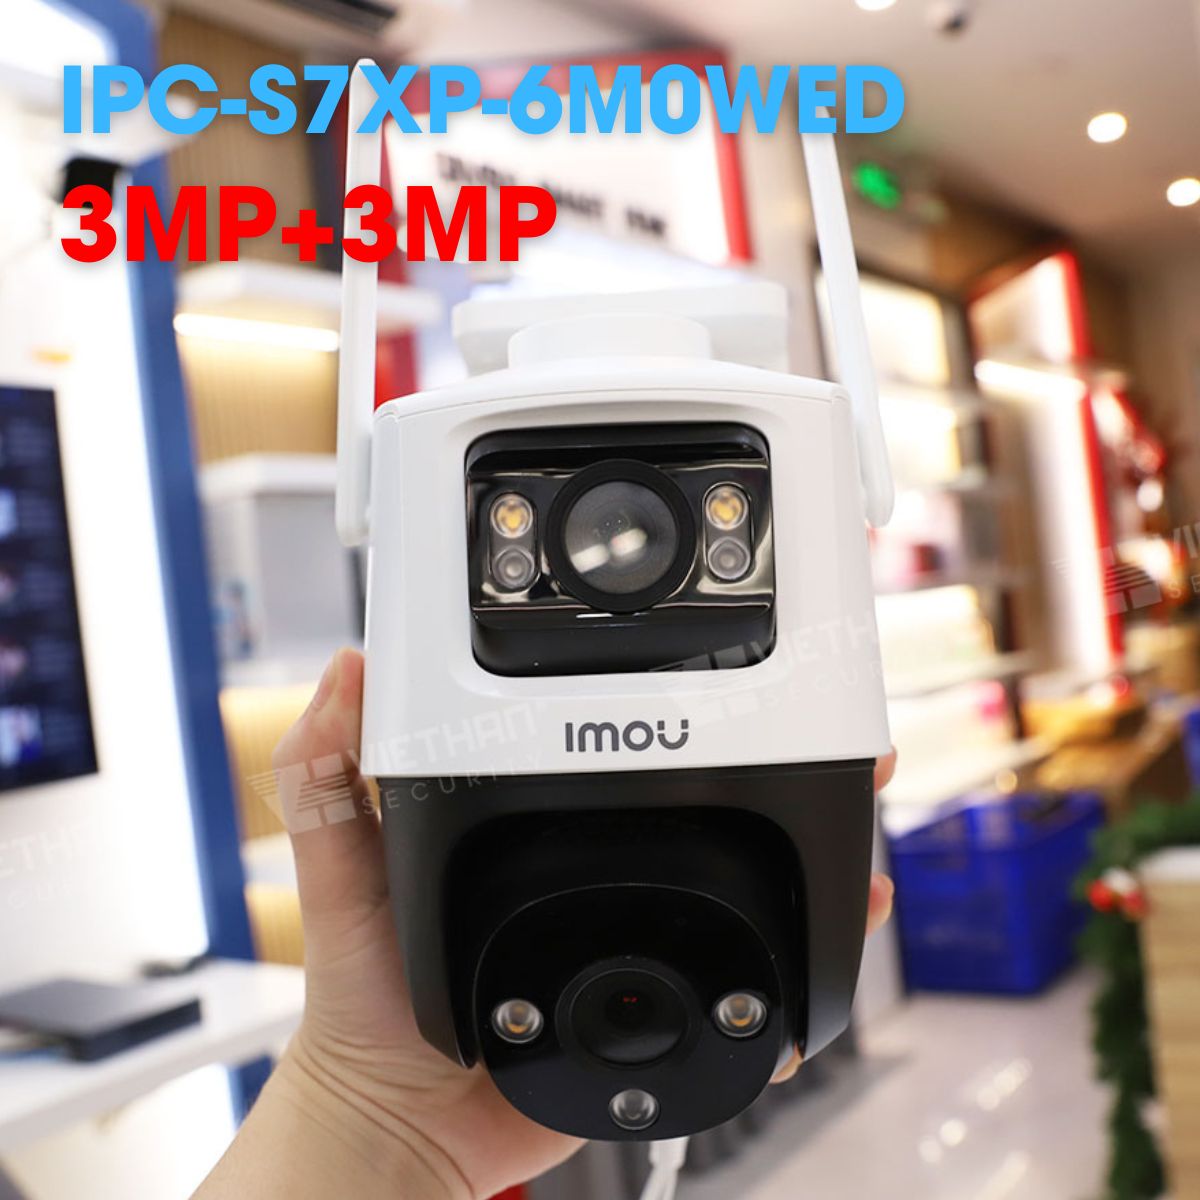 Camera wifi 2 ống kính IMOU IPC-S7XP-6M0WED 3MP+3MP, đàm thoại 2 chiều, cảnh báo chủ động